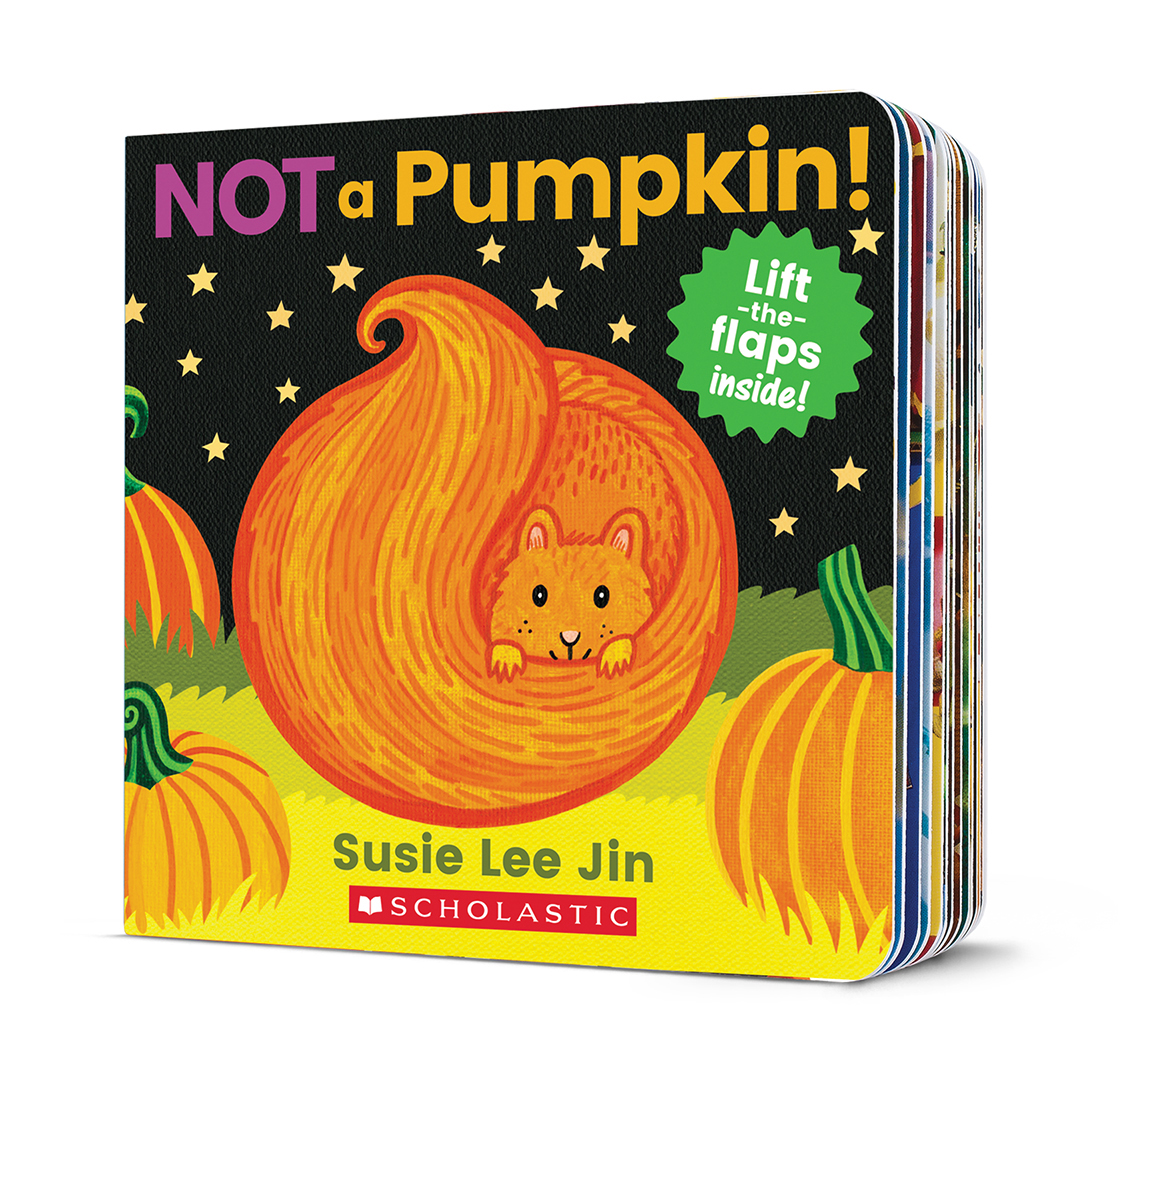  Not a Pumpkin! 